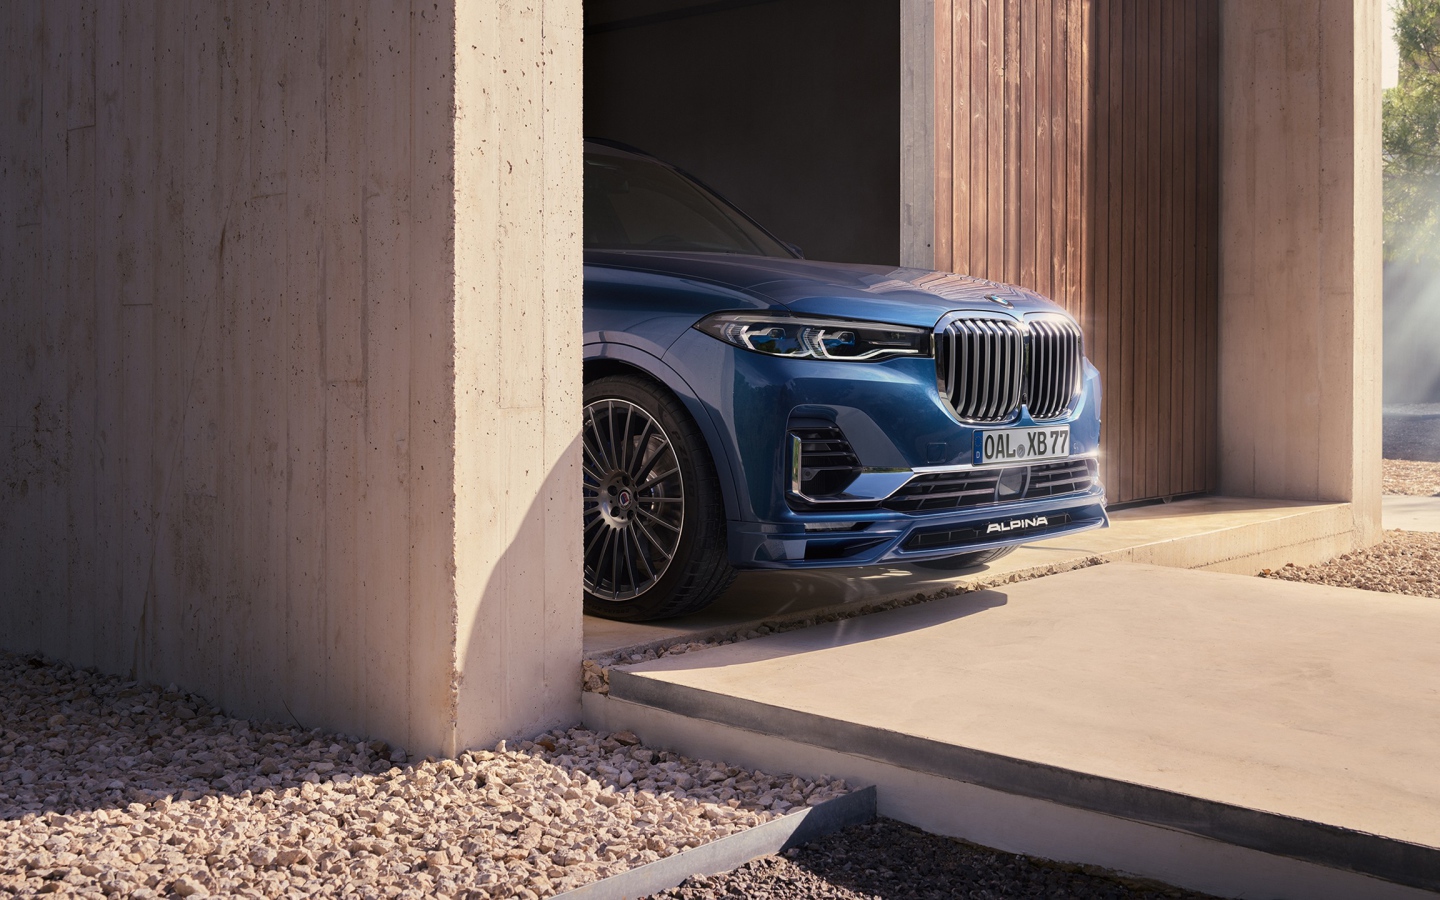 Автомобиль BMW Alpina XB7, 2021 года выезжает из гаража